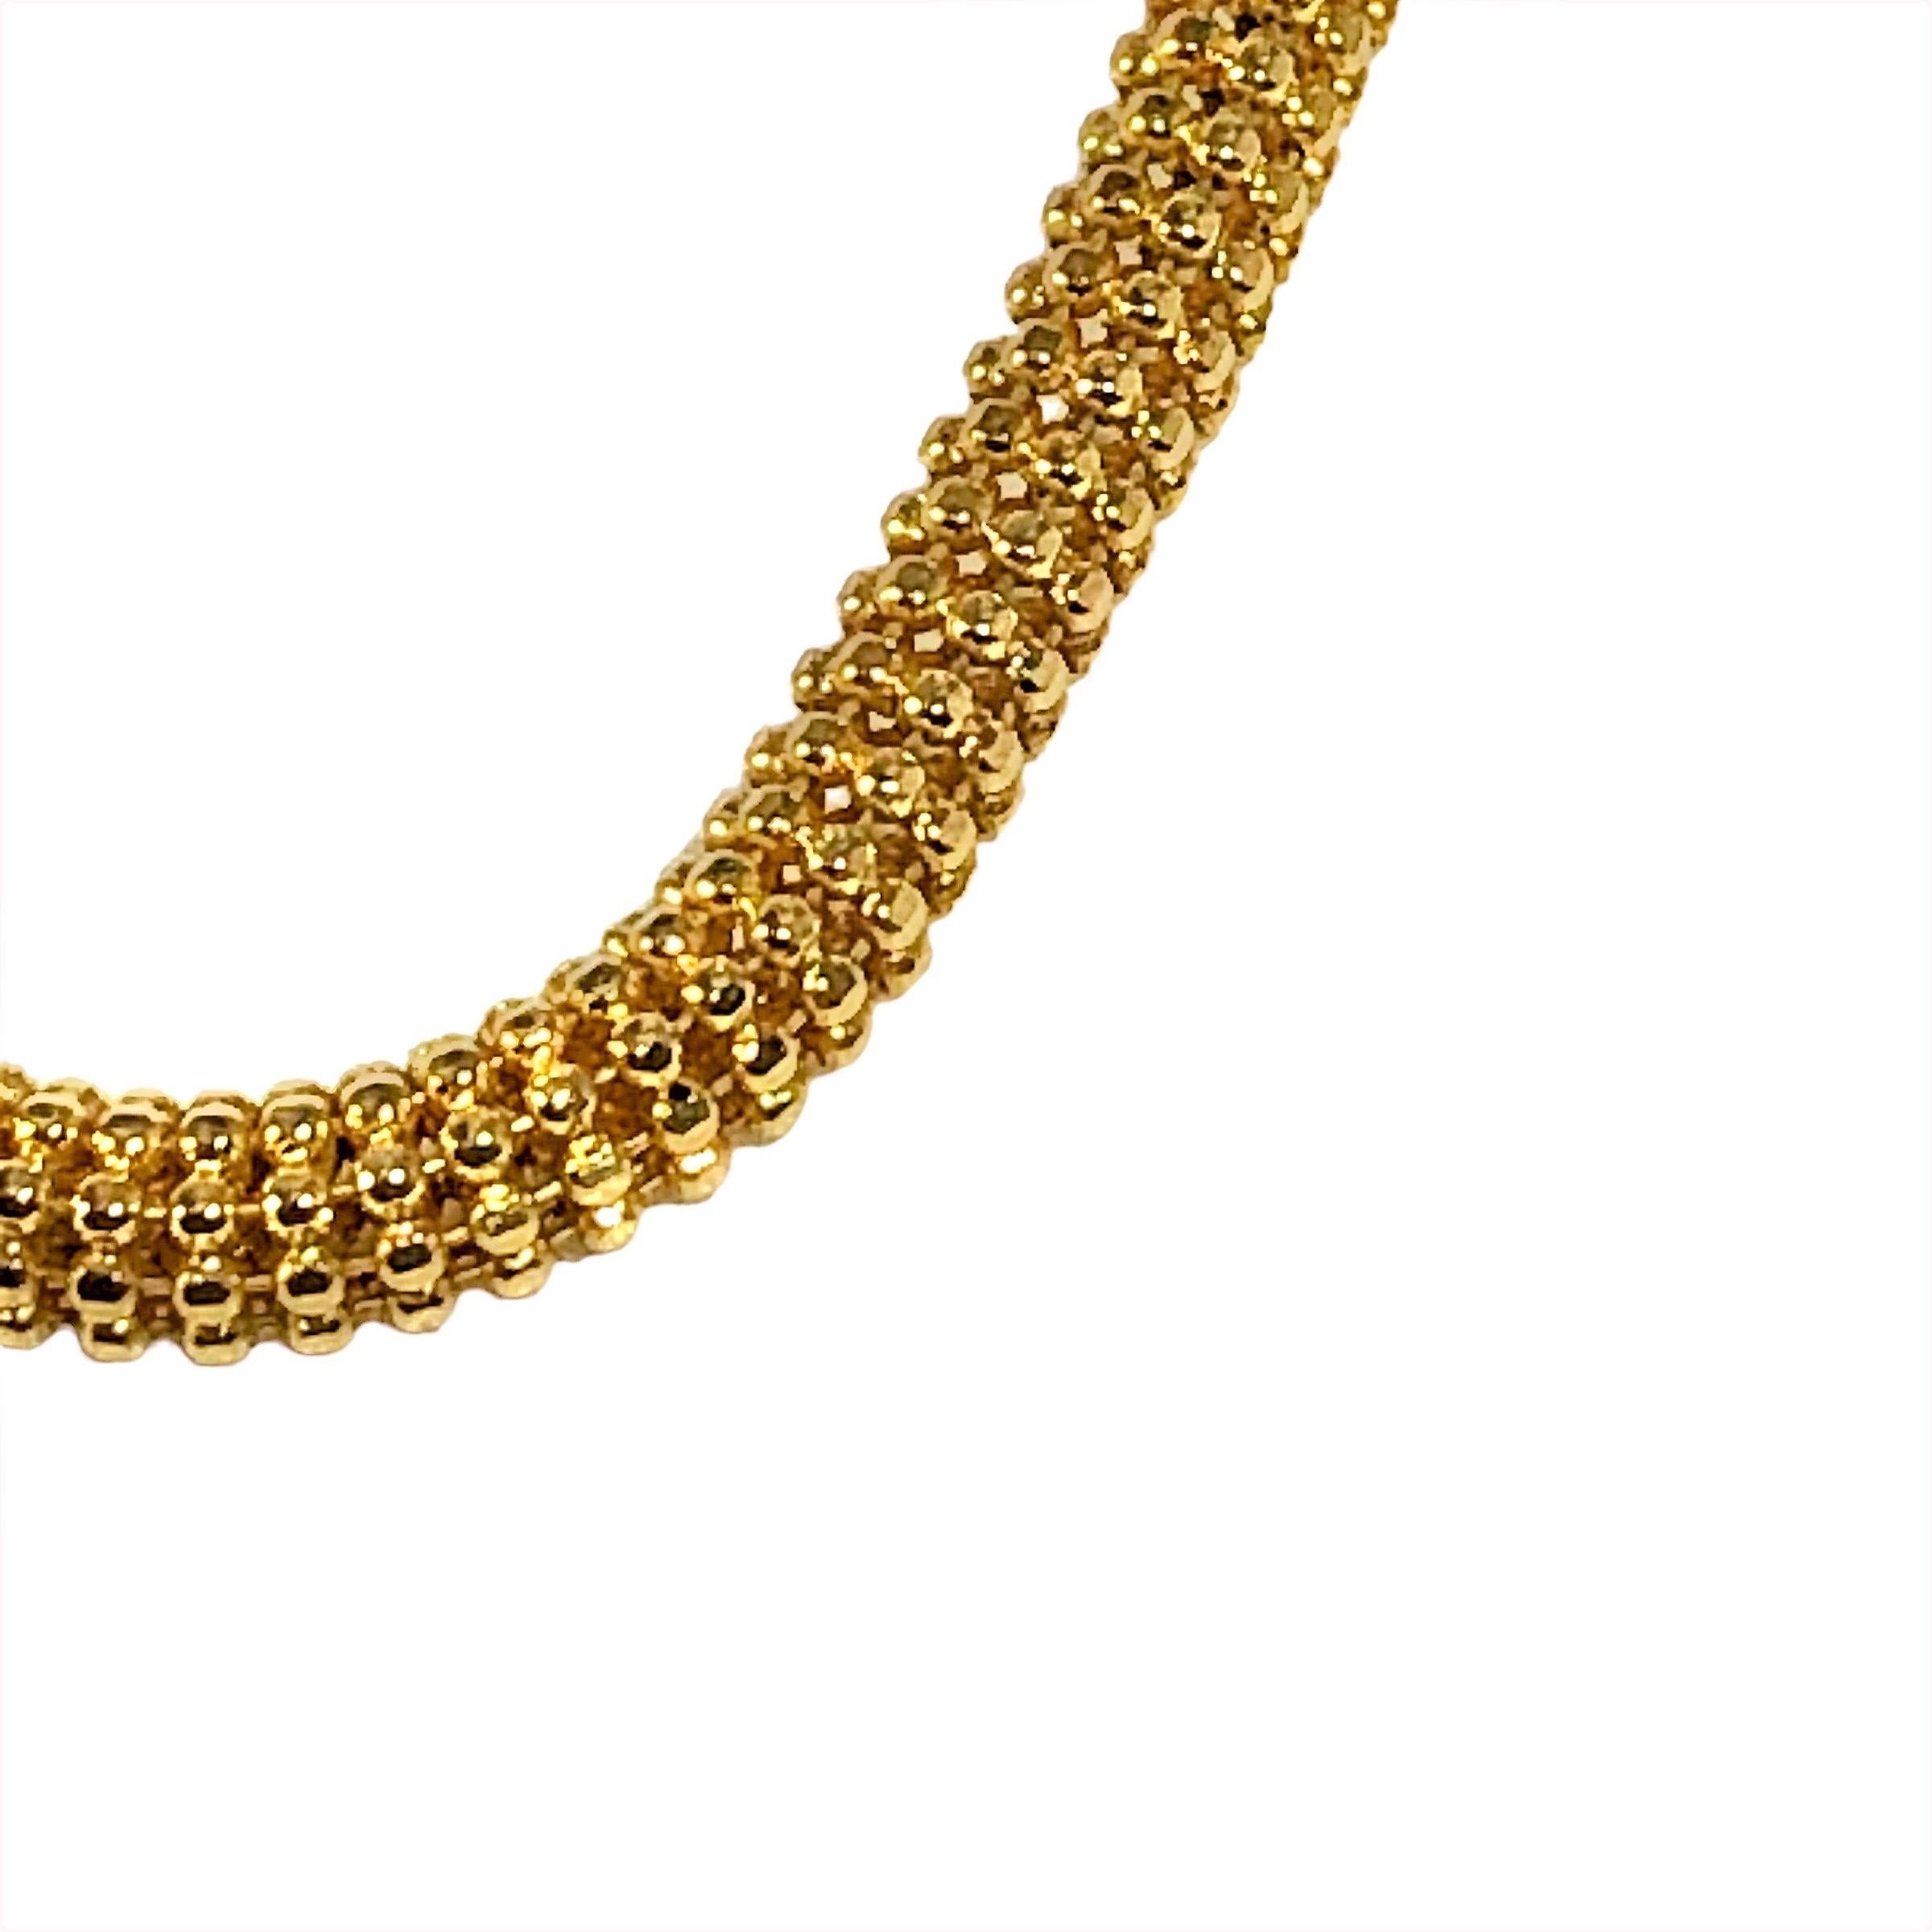 Cet élégant collier rond en or jaune 14 carats est non seulement très beau, mais il est construit à la manière des meilleurs articles provenant des artisans italiens. Chaque maillon est relié au suivant par huit fils de connexion qui permettent à la